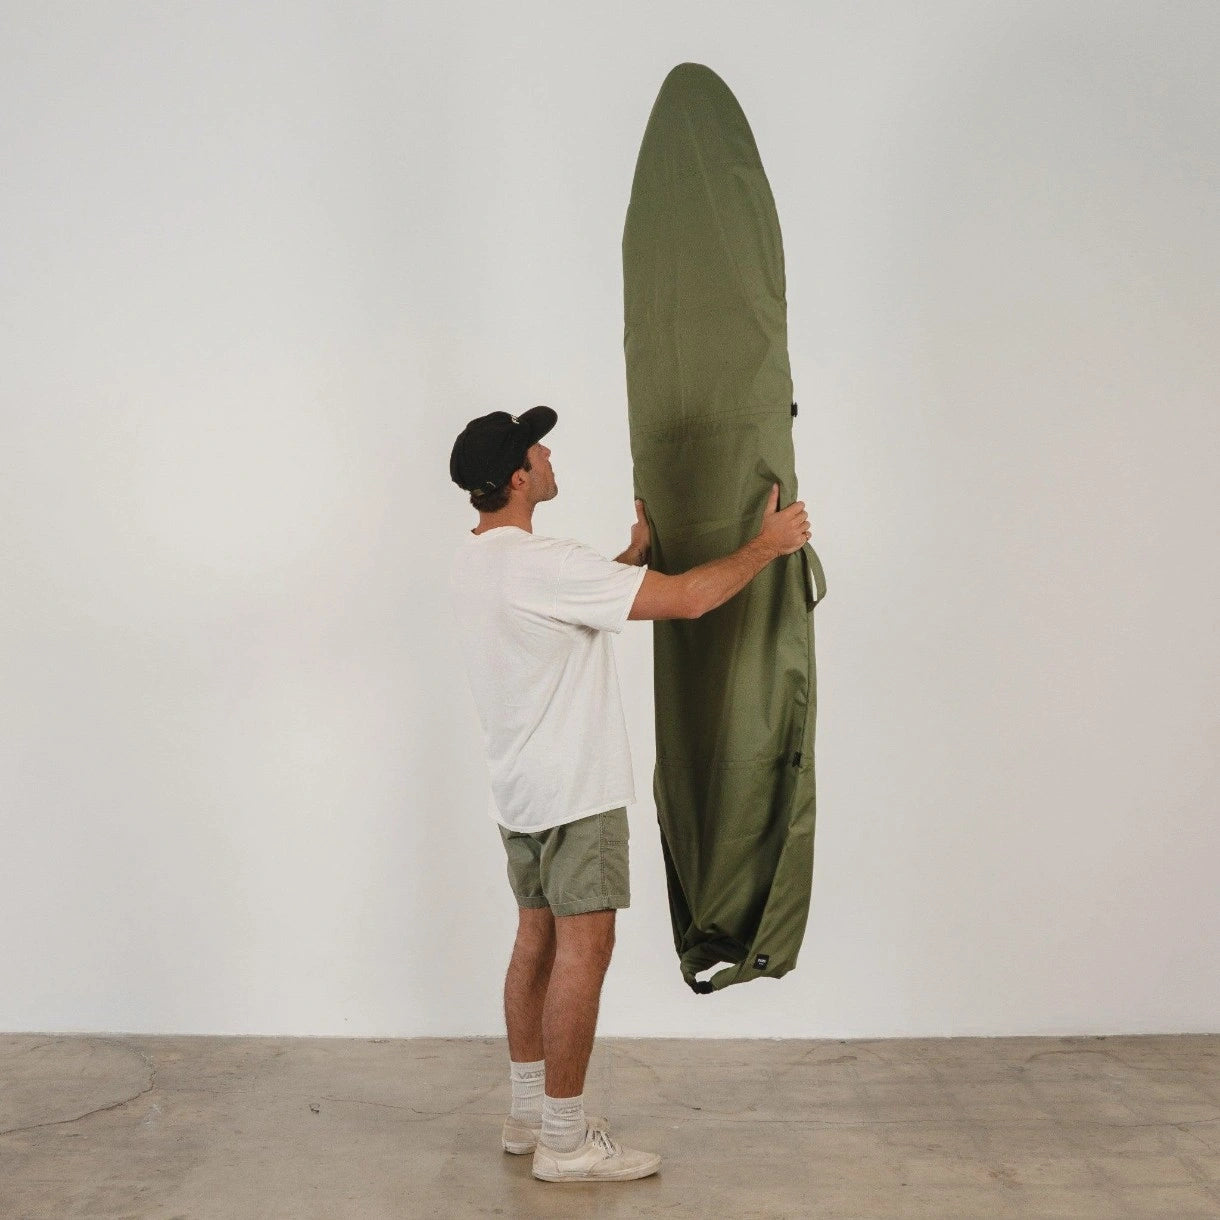 6ft surfboard bag